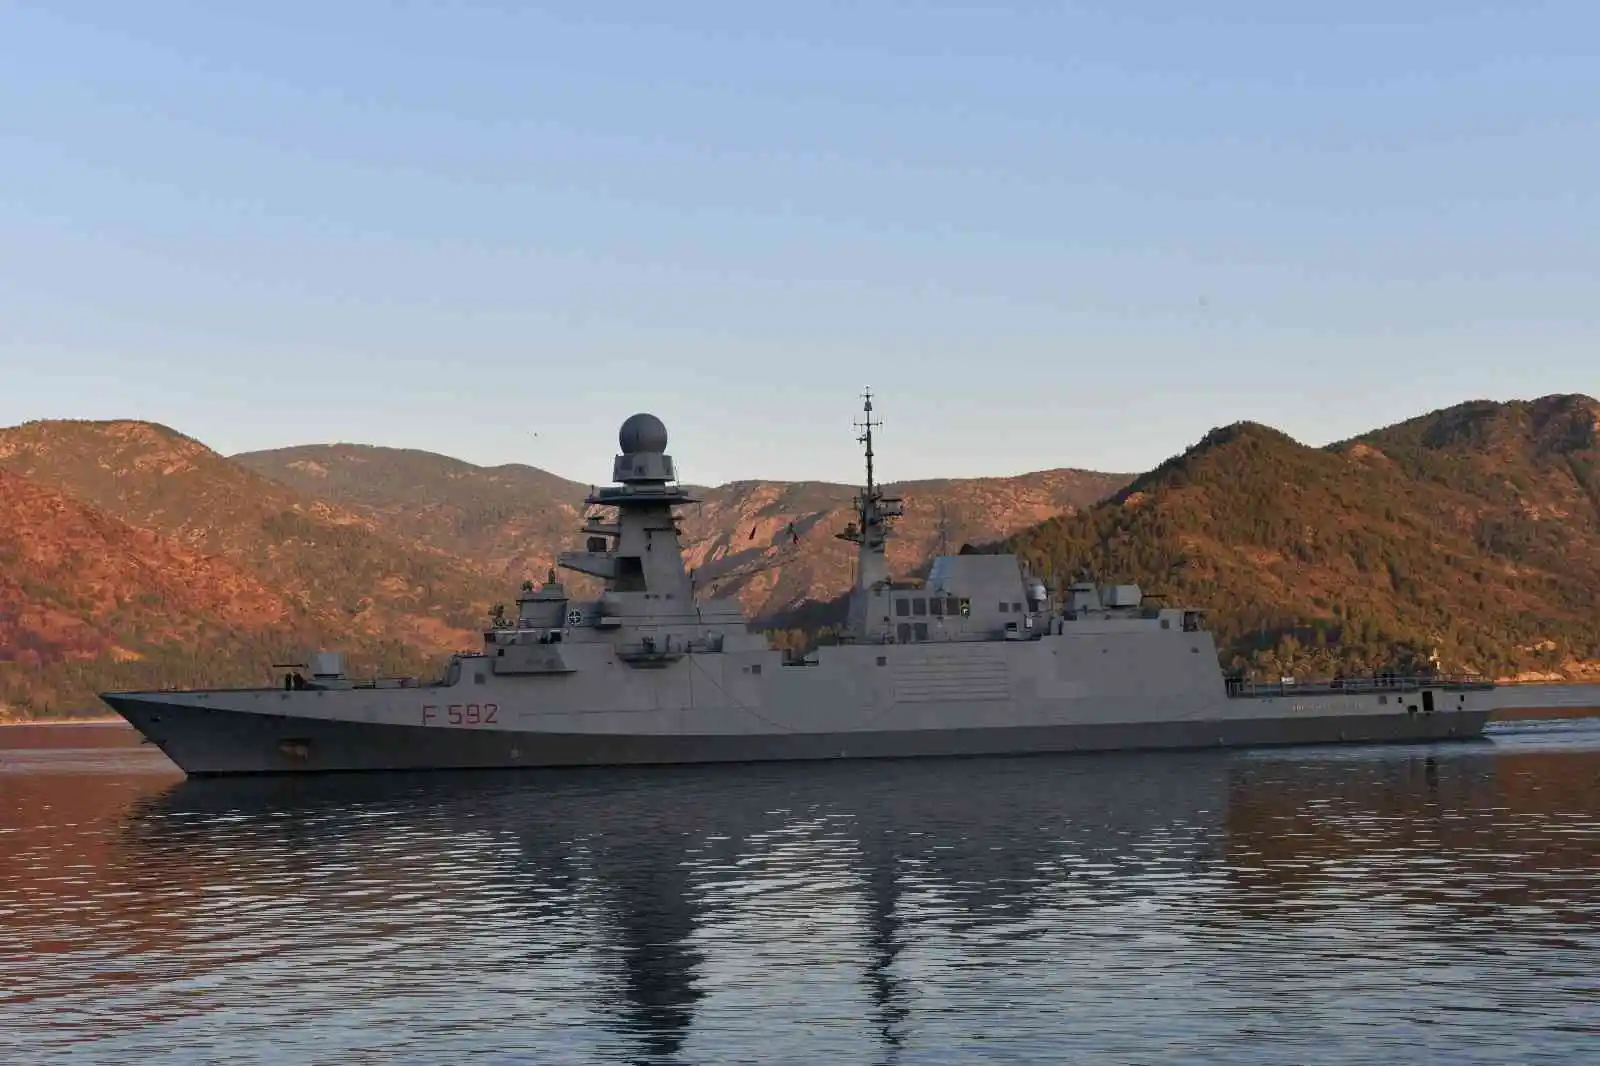 İtalyan Deniz Kuvvetlerine ait fırkateyn Aksaz’a liman ziyareti gerçekleştirdi
